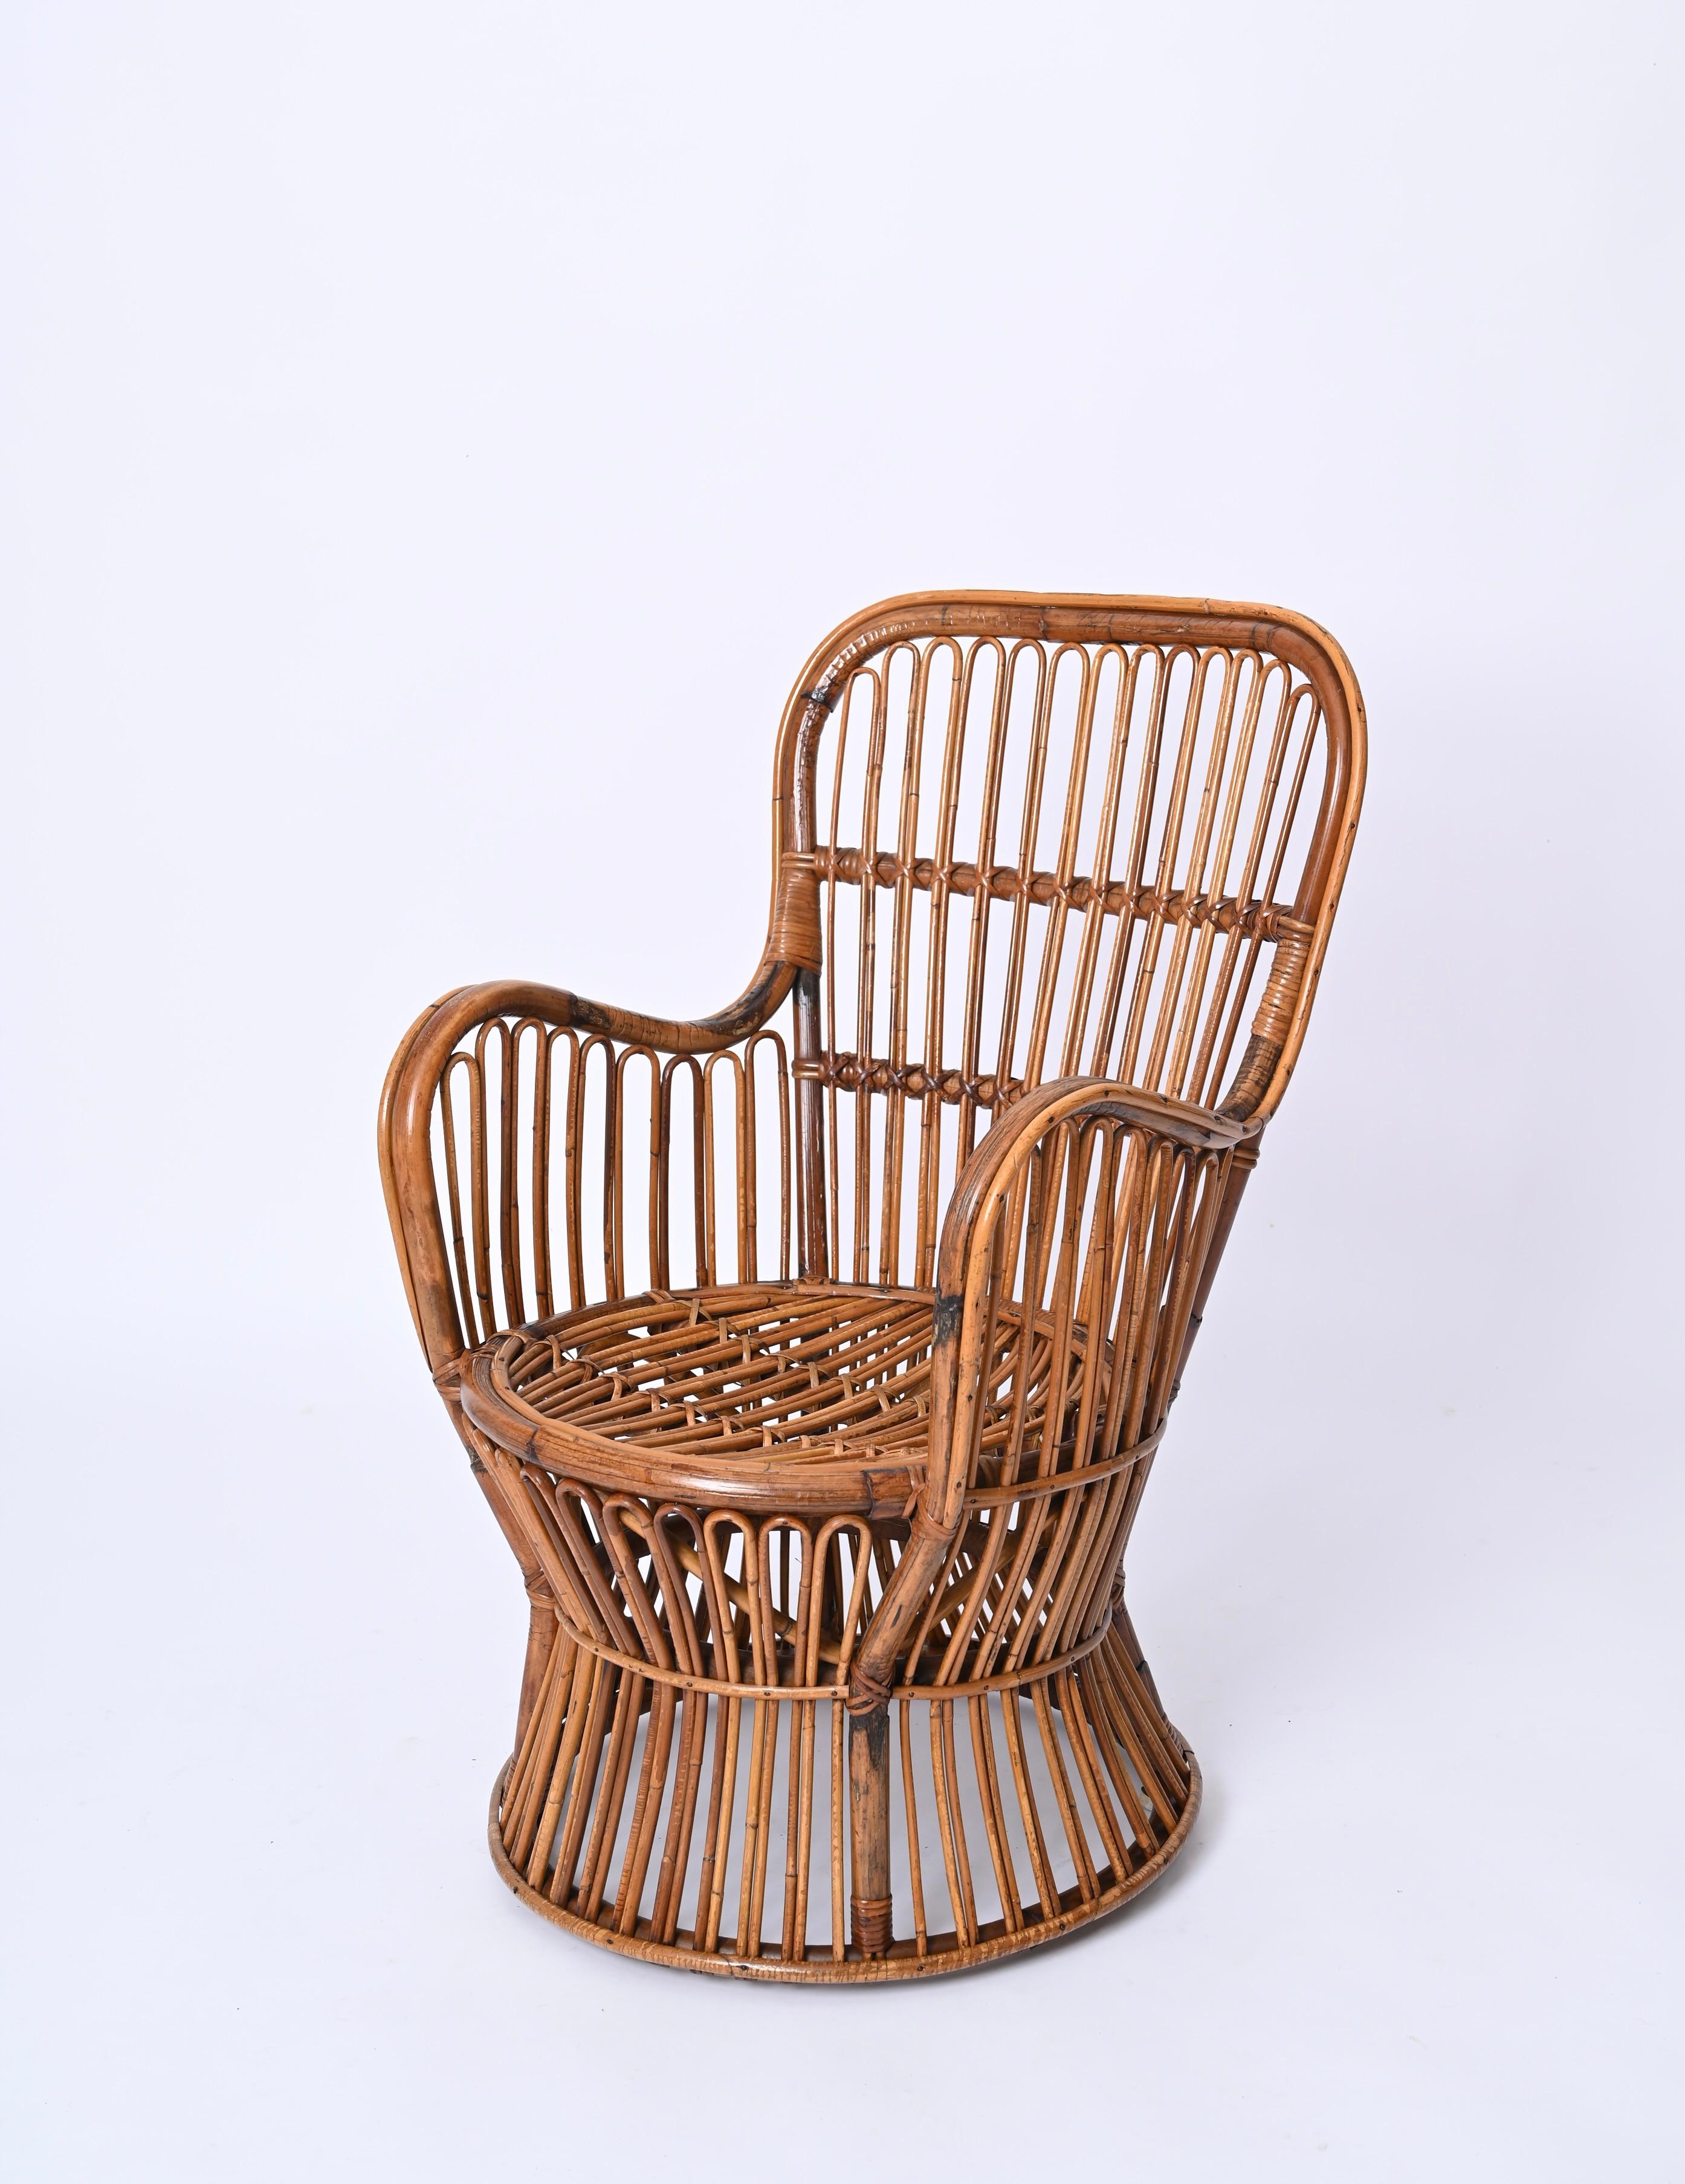 Fantastischer Sessel aus der Mitte des Jahrhunderts aus Rattangeflecht. Dieses unglaublich seltene Stück wurde in den 1960er Jahren von Bonacina in Italien hergestellt.

Die Handwerkskunst dieses Sessels ist außergewöhnlich, mit einem